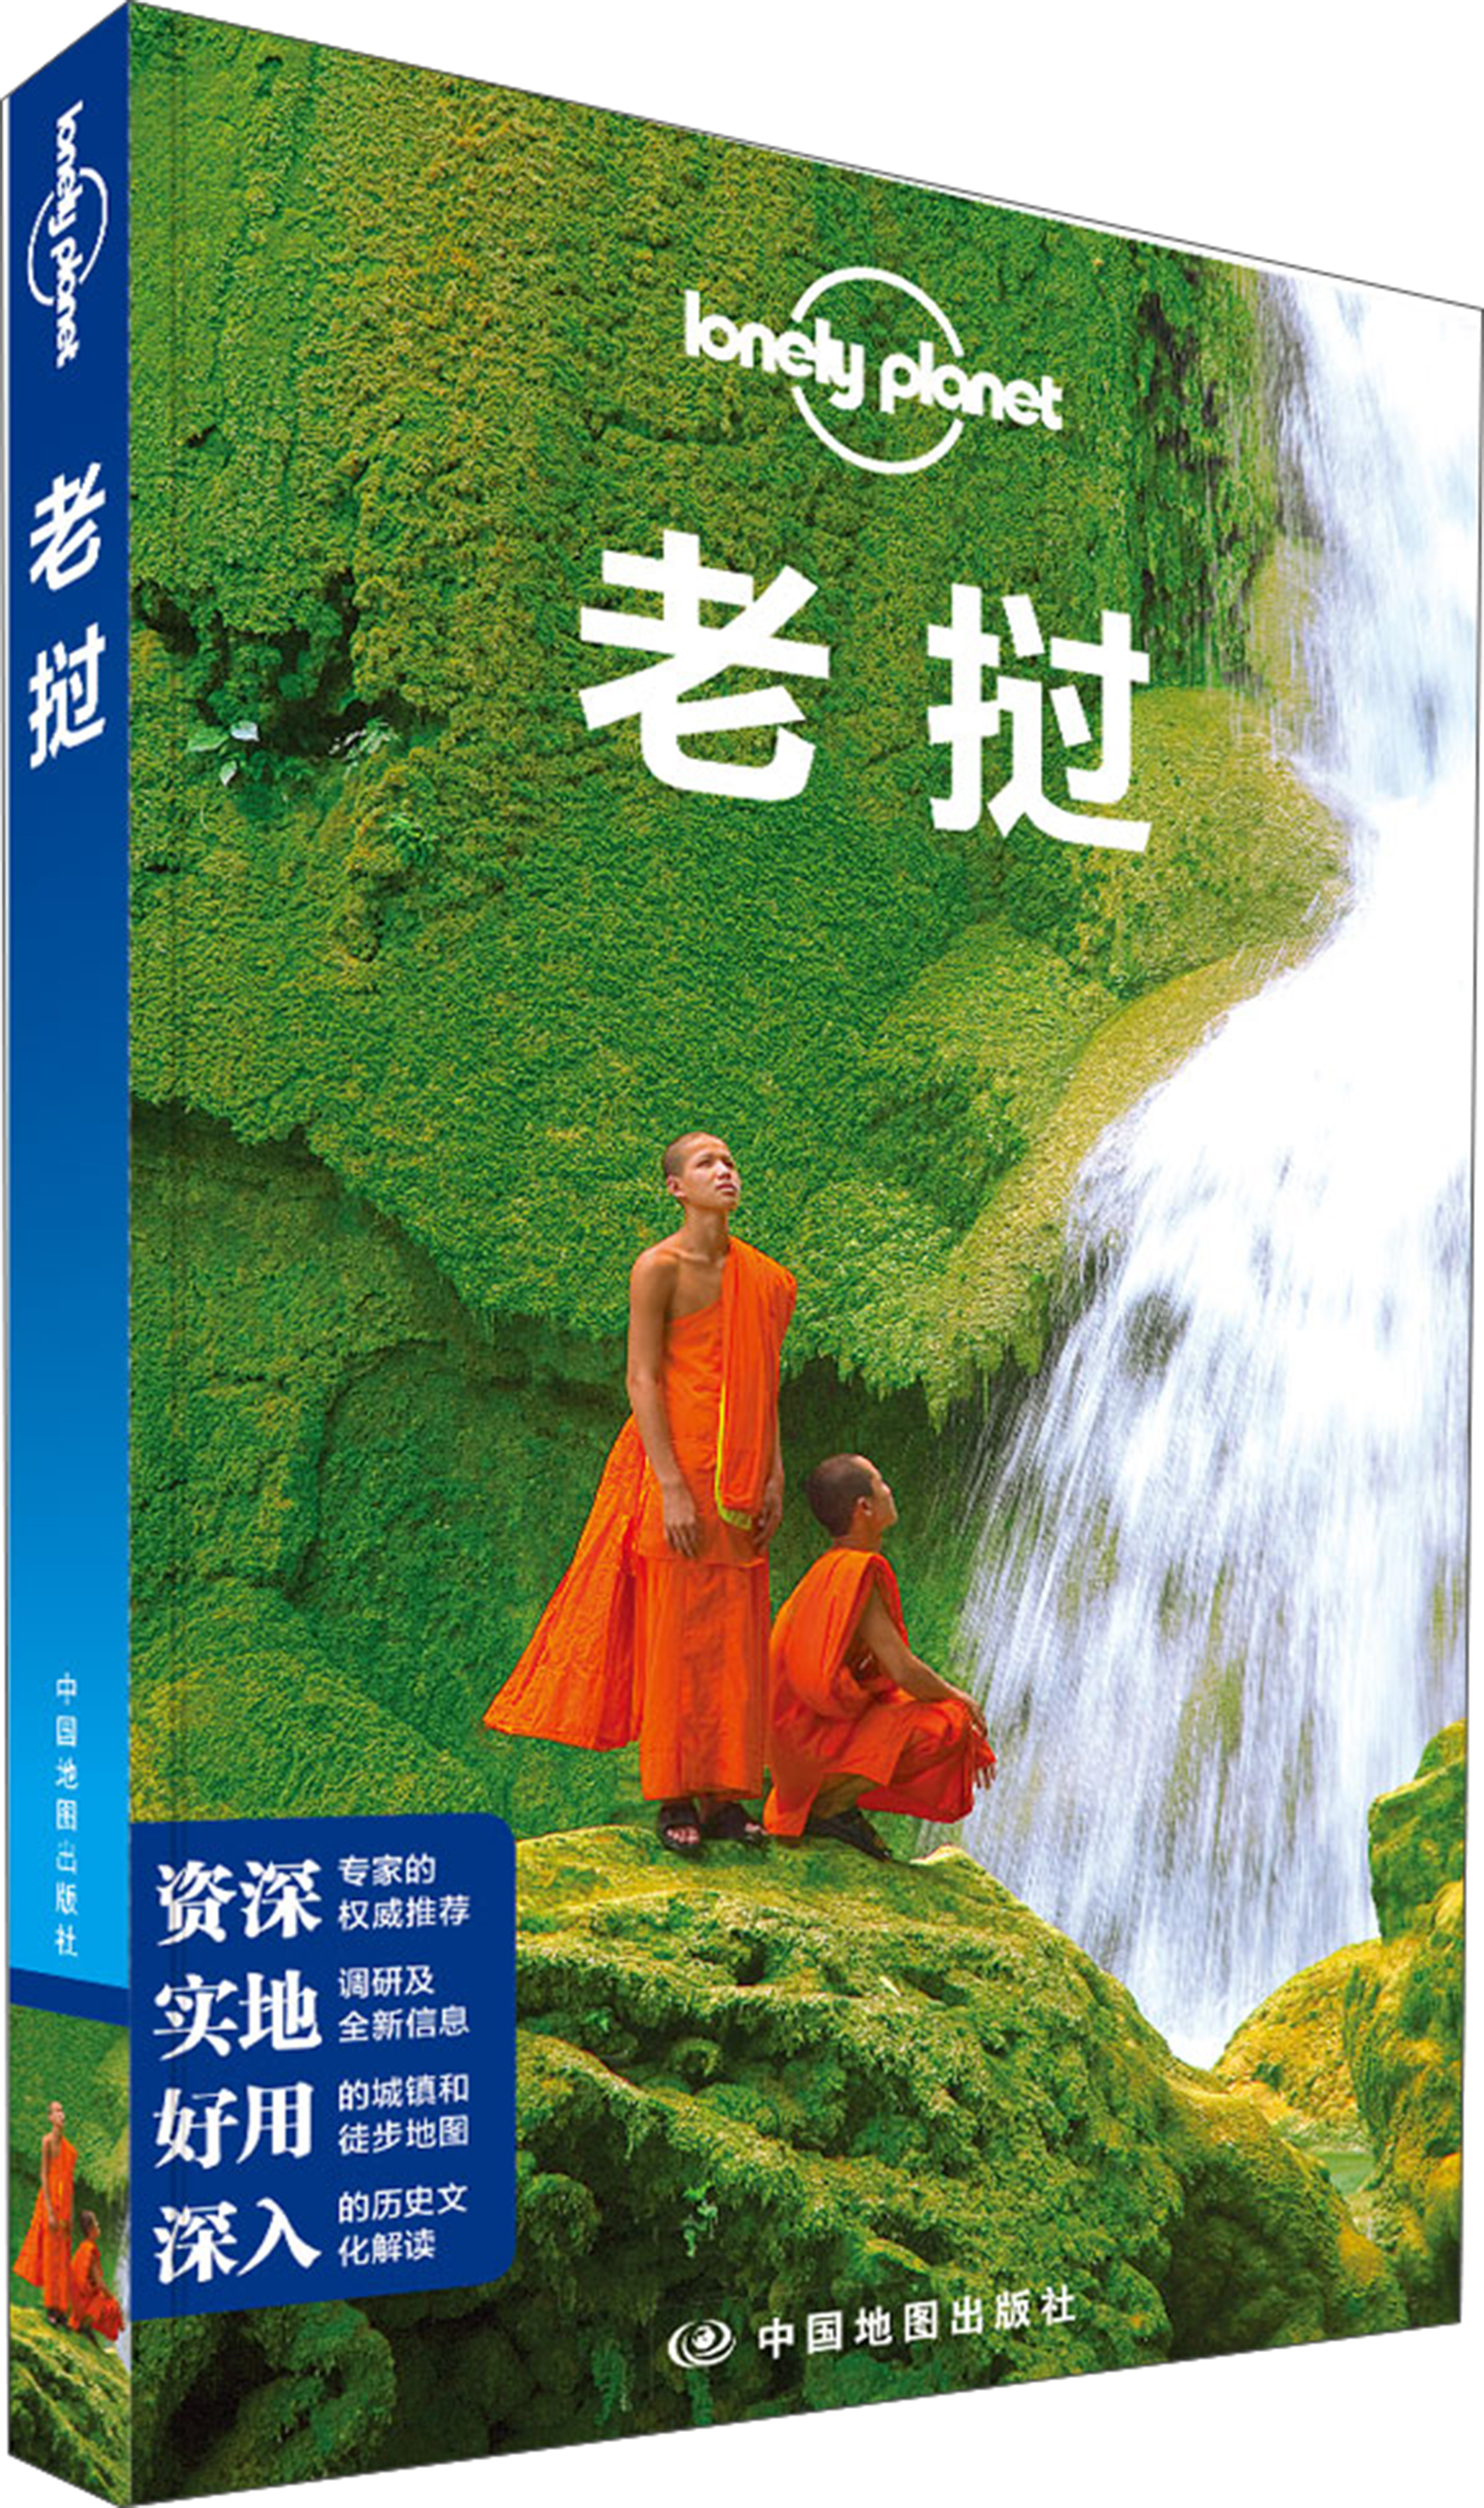 孤独星球Lonely Planet旅行指南系列：老挝 epub格式下载